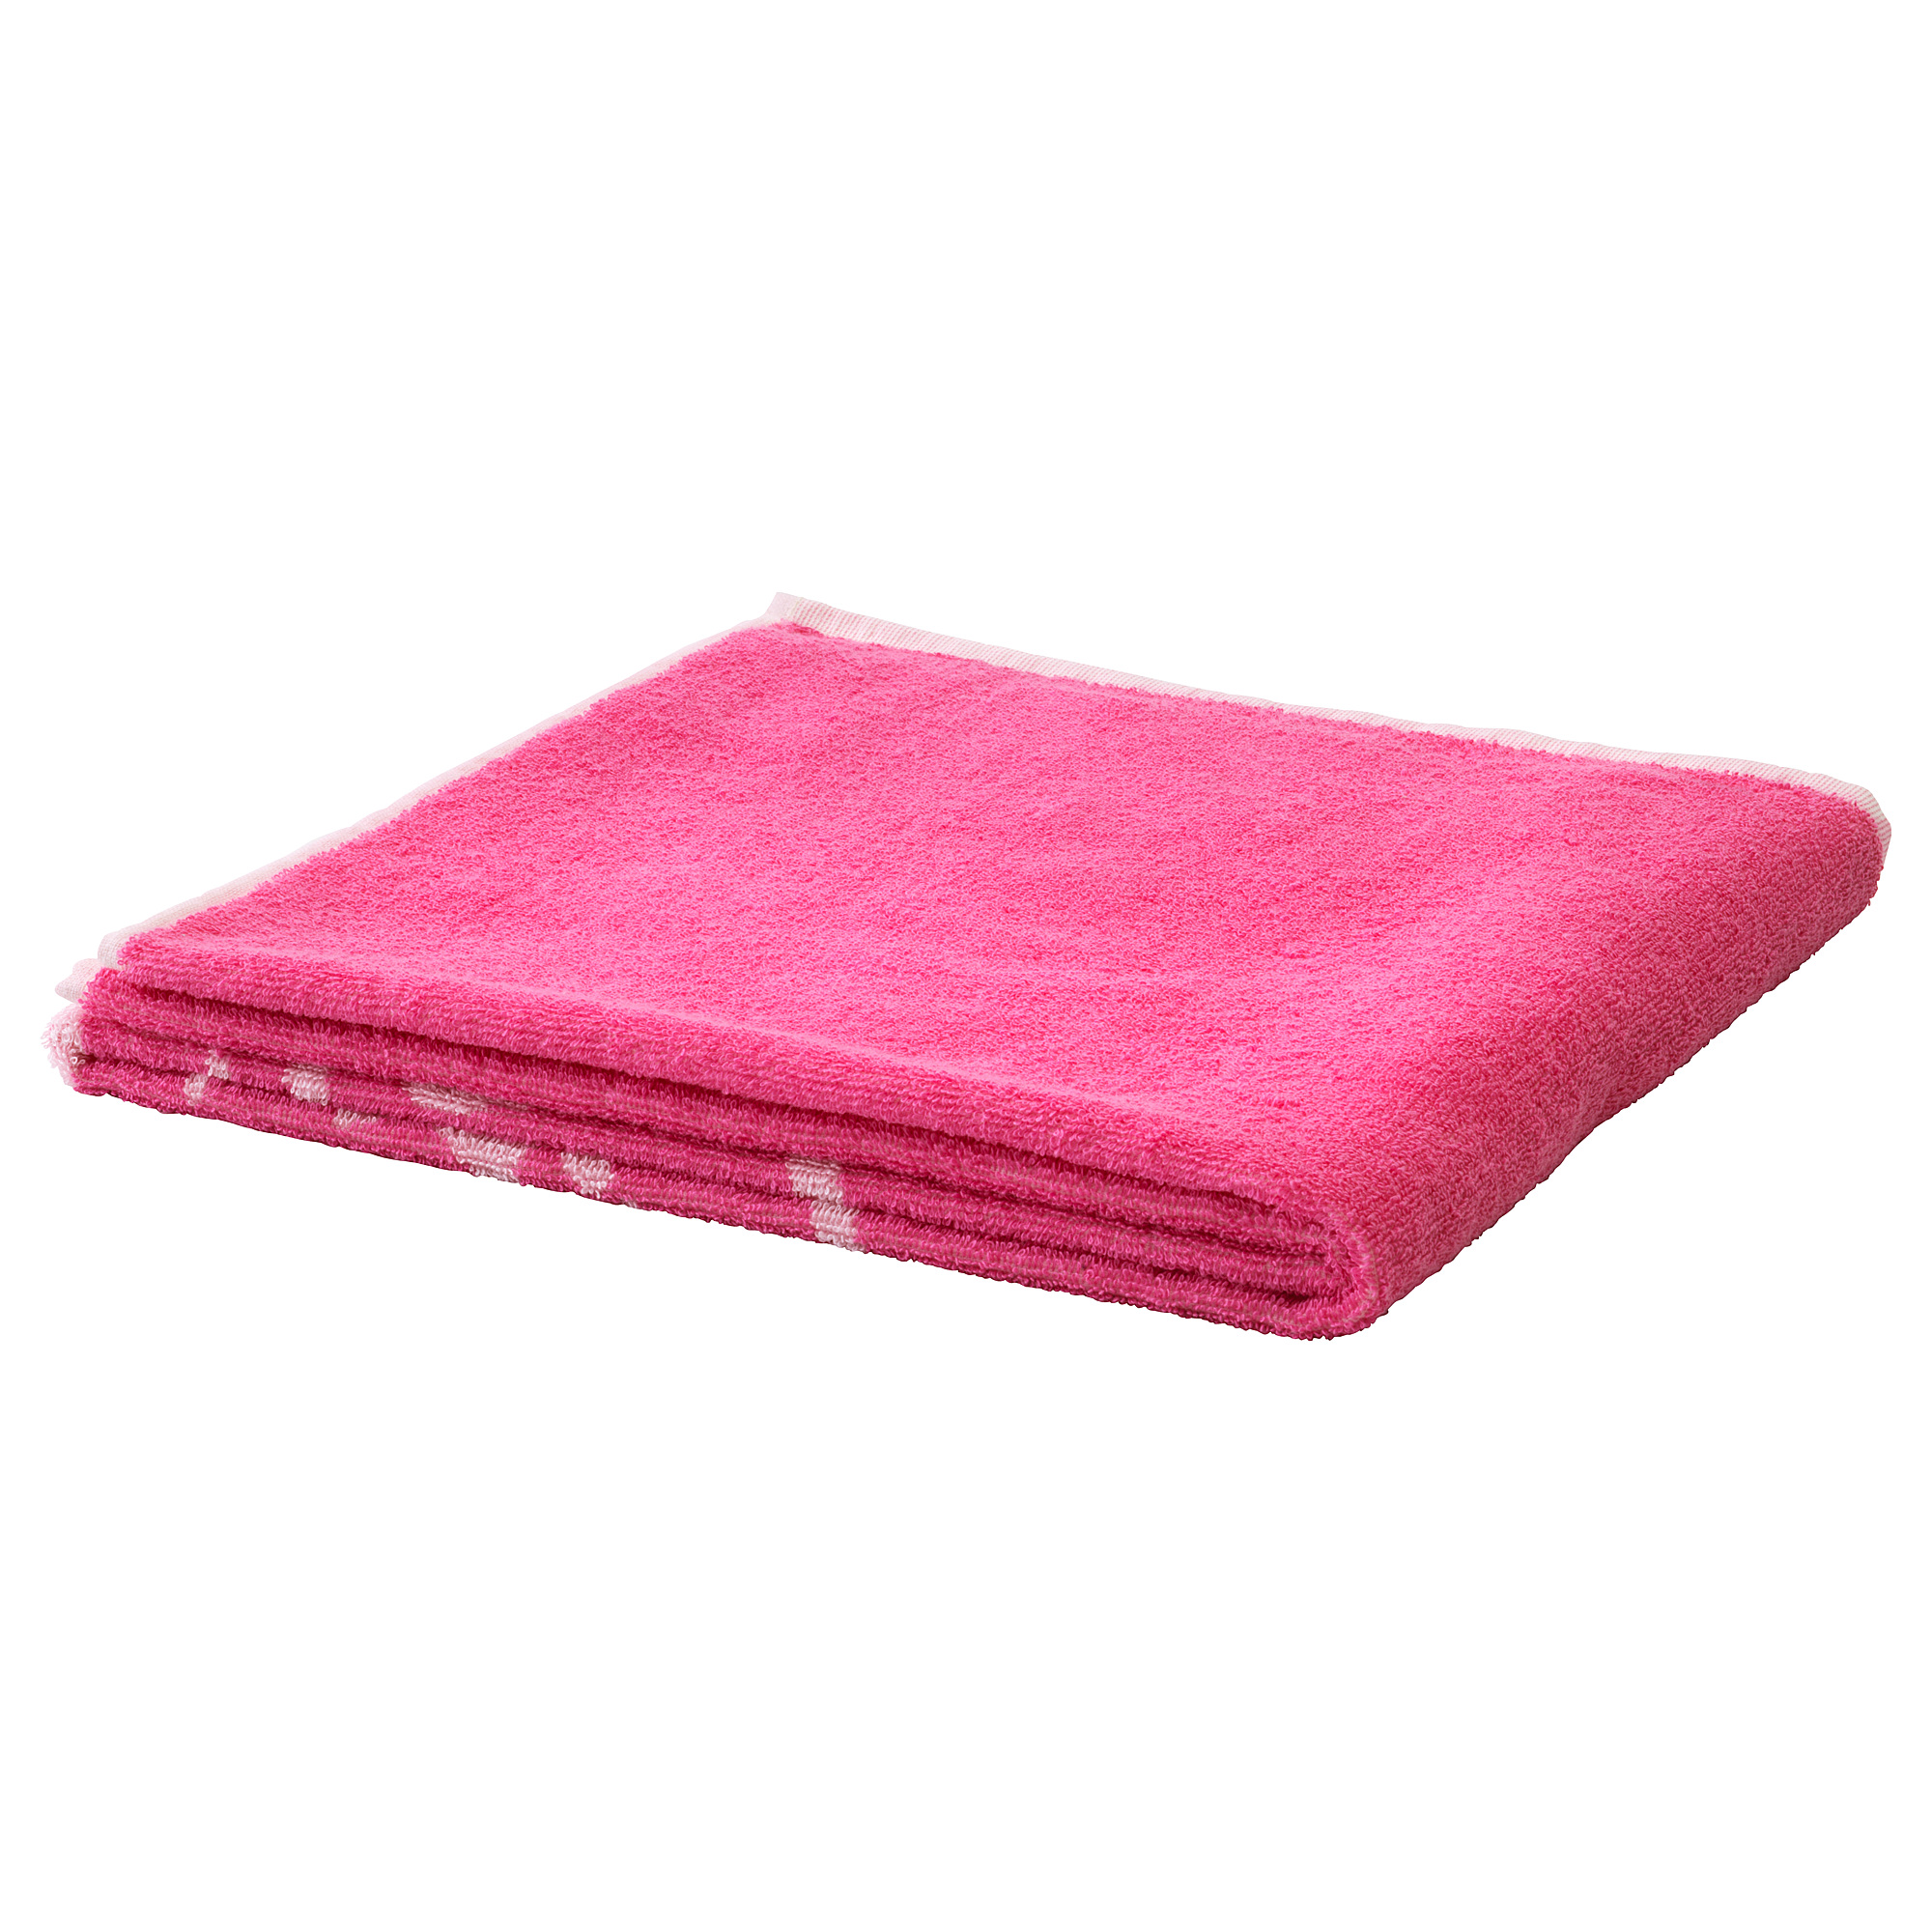 URSKOG bath towel